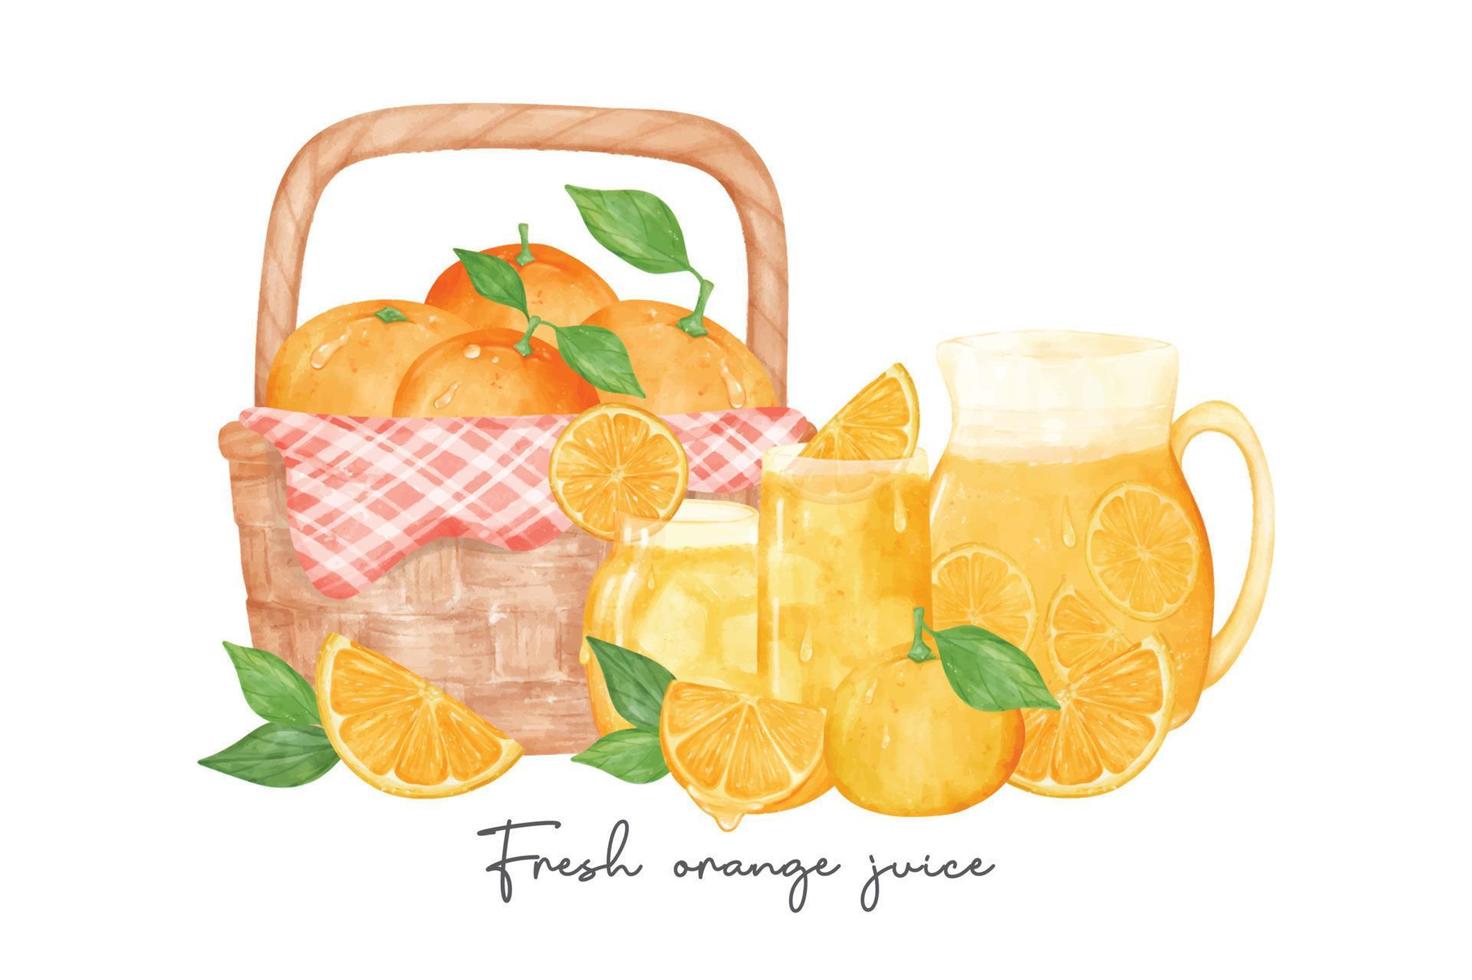 uppsättning av färsk hemlagad orange juice med frukt sammansättning vattenfärg illustration vektor baner isolerat på vit bakgrund.